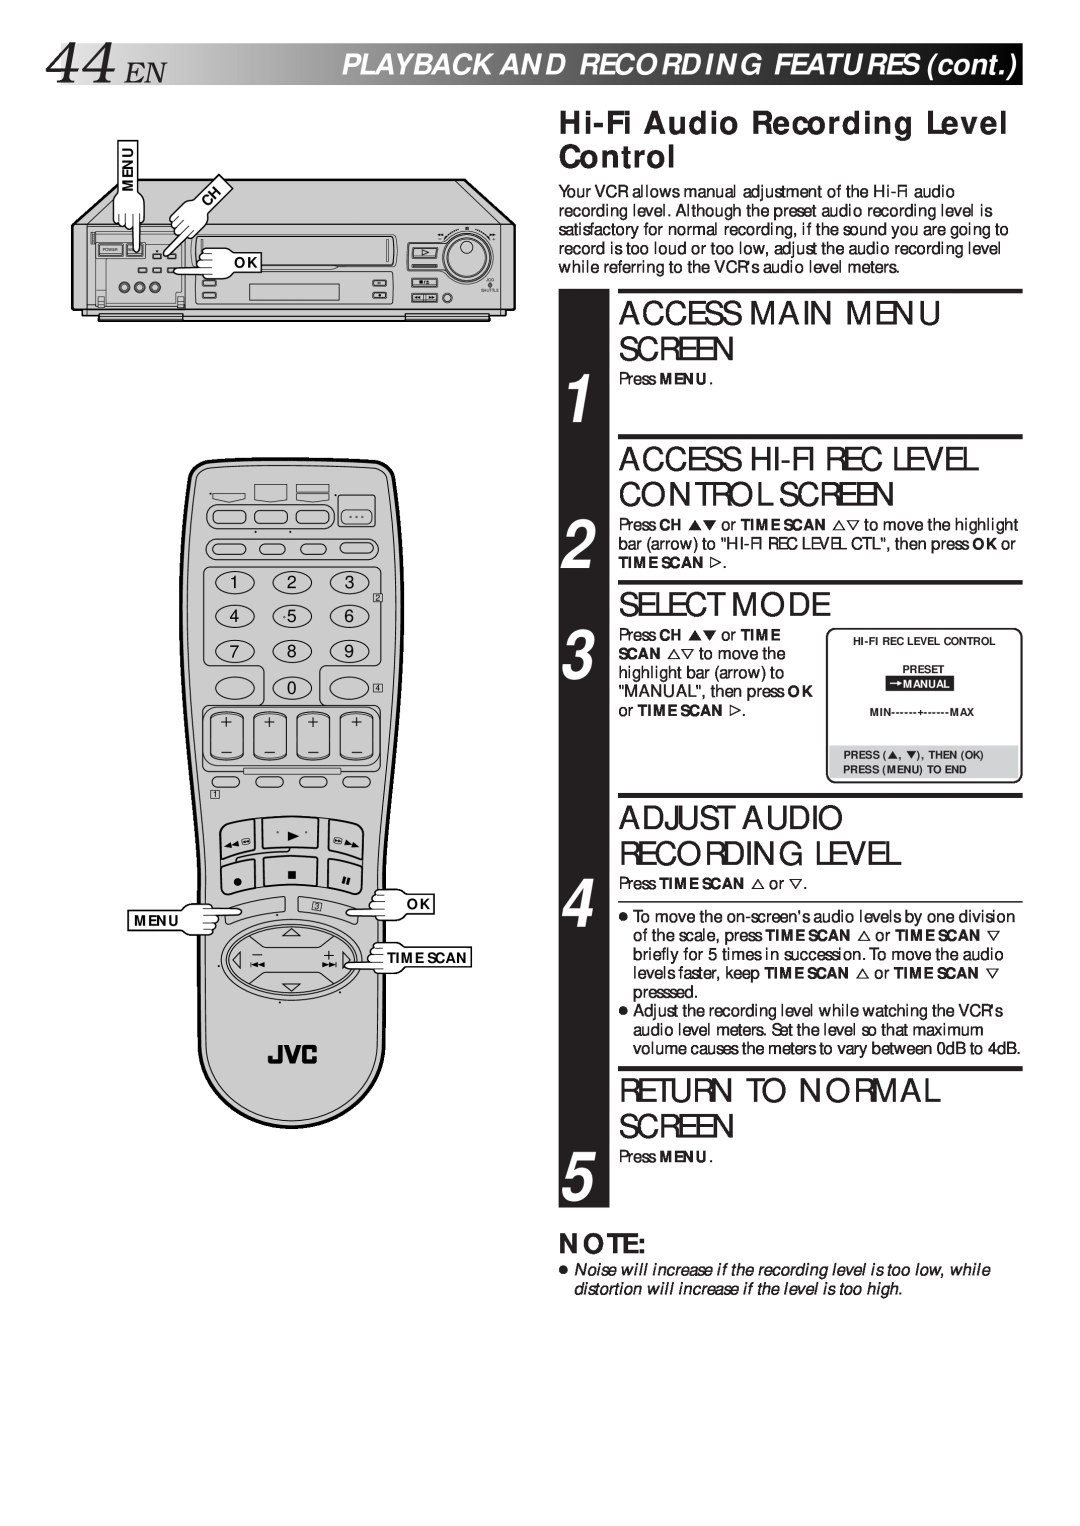 JVC HR-S7500U manual 44EN, Control Screen, Adjust Audio, Hi-Fi Audio Recording Level Control, Access Hi-Fi Rec Level 